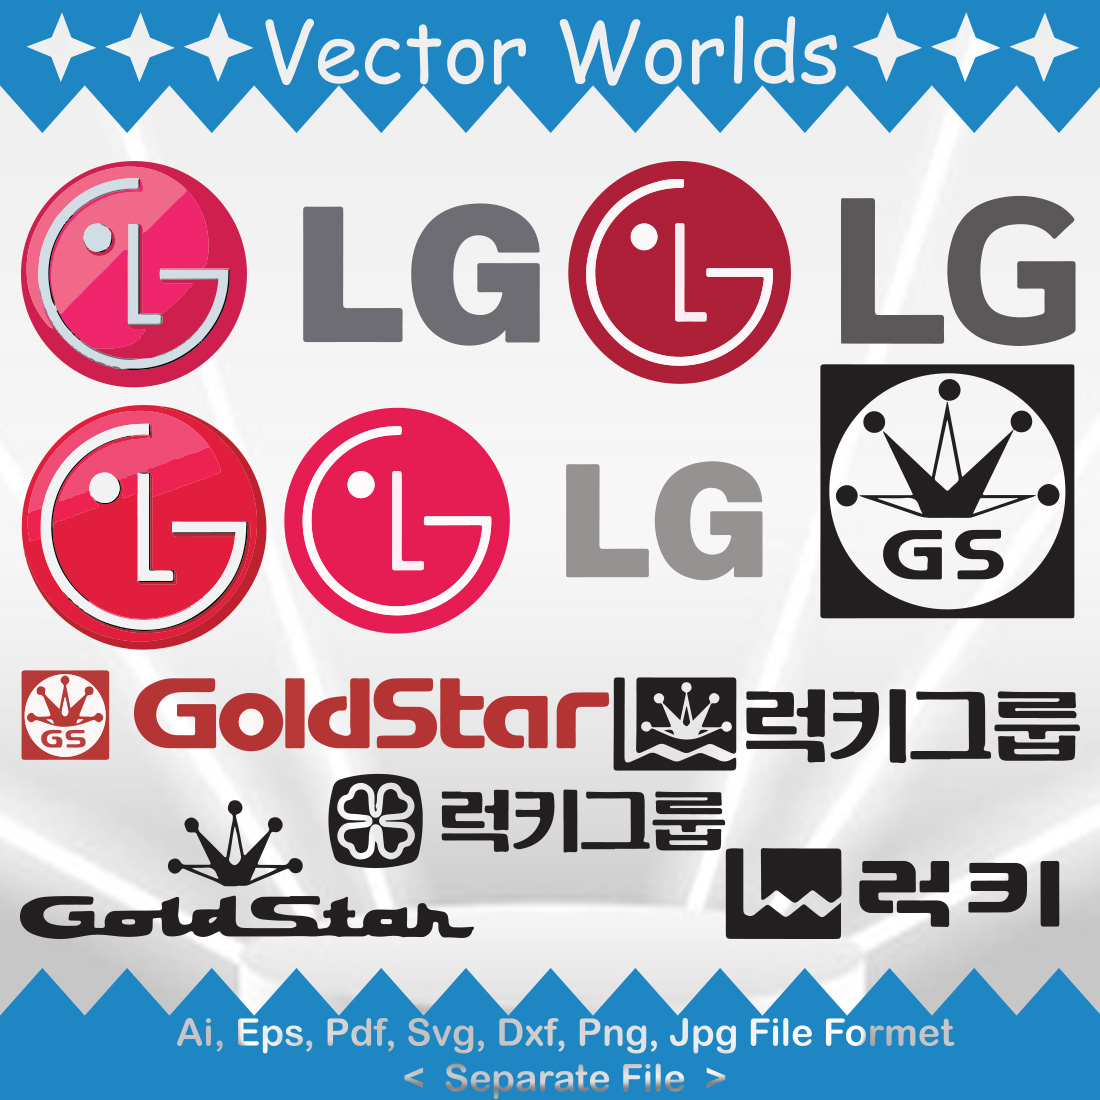 LG Logo SVG Vector Design cover image.